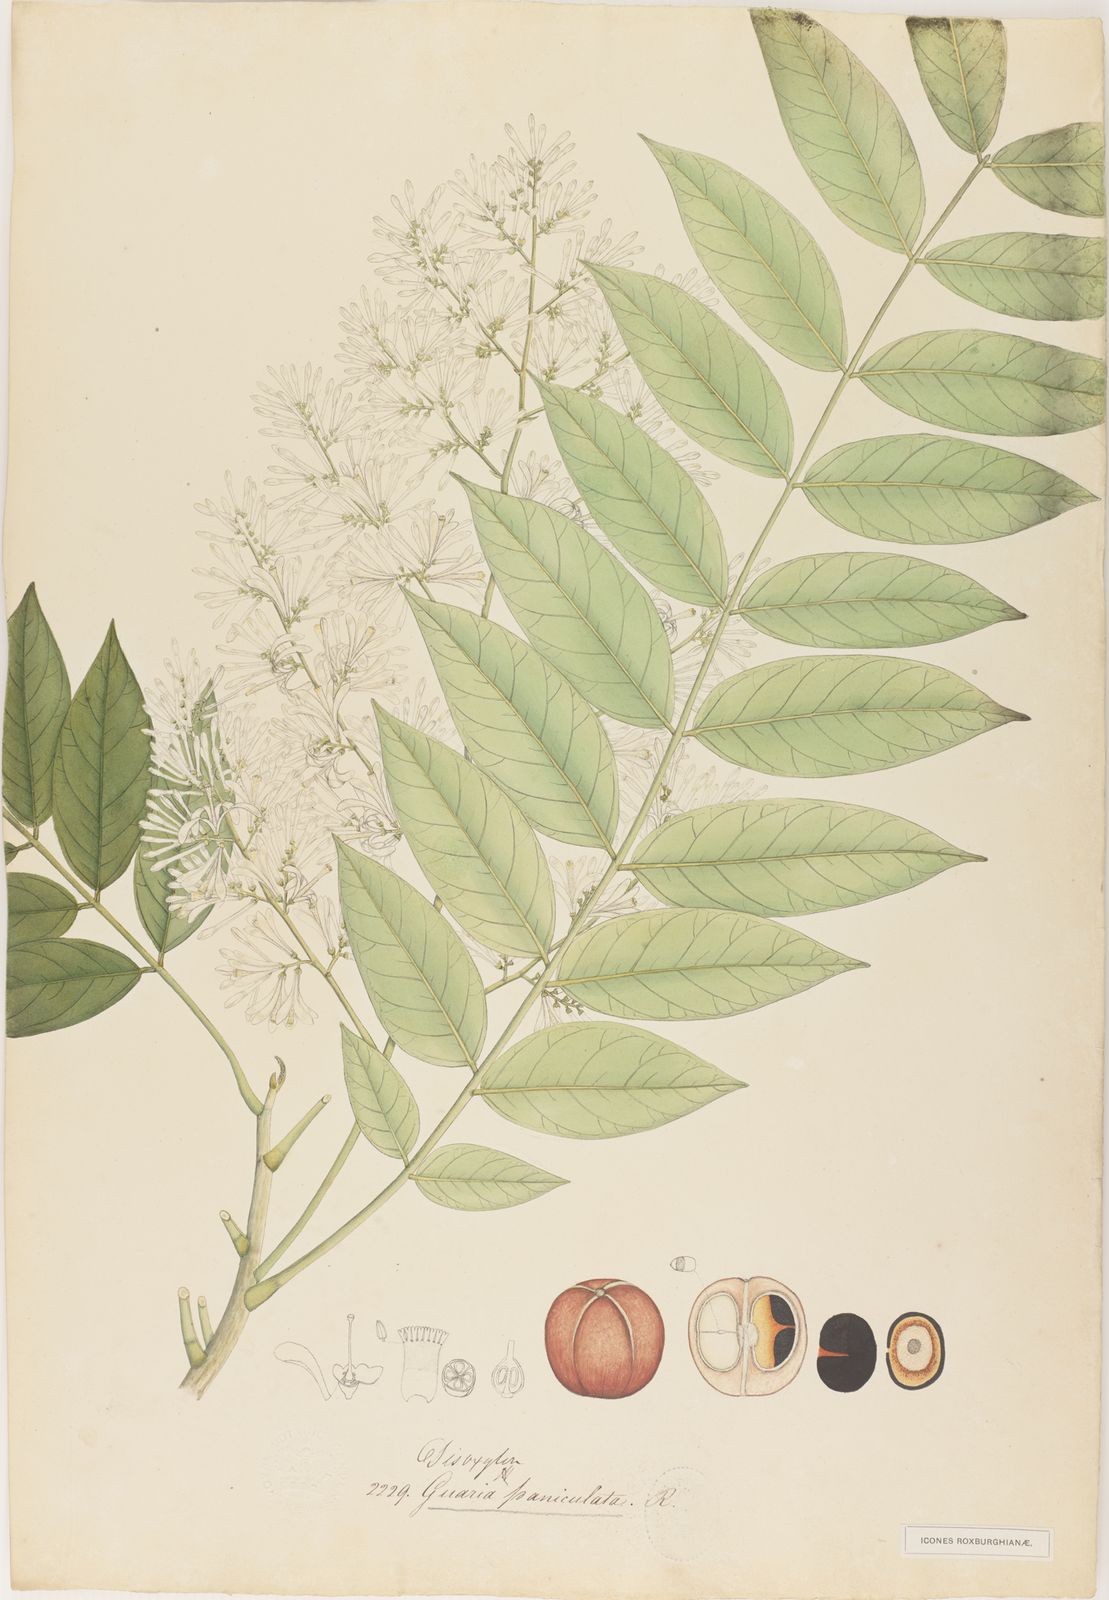 Chisocheton cumingianus subsp. balansae (C.DC.) Mabb. | Plants of the ...